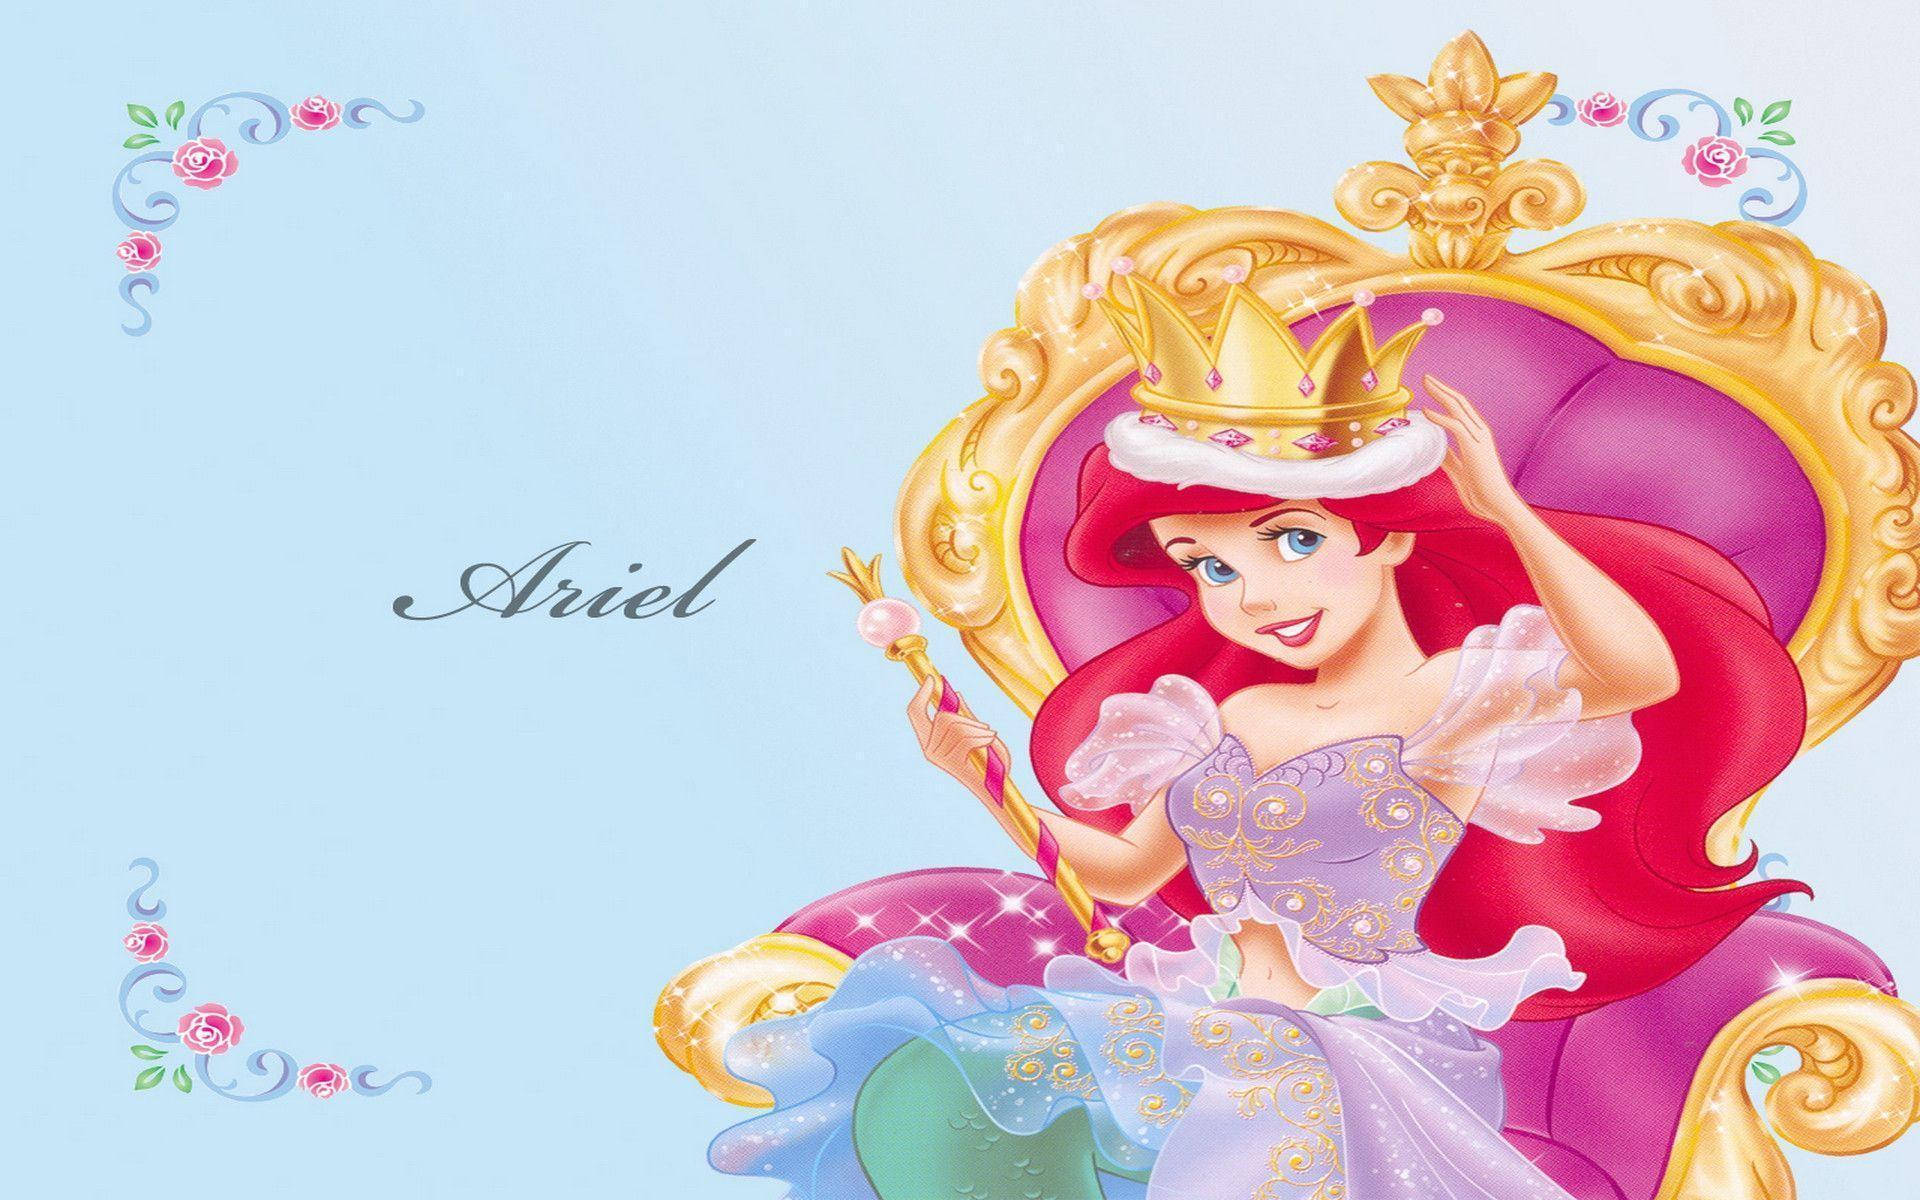 Ariel The Little Mermaid Wallpaper